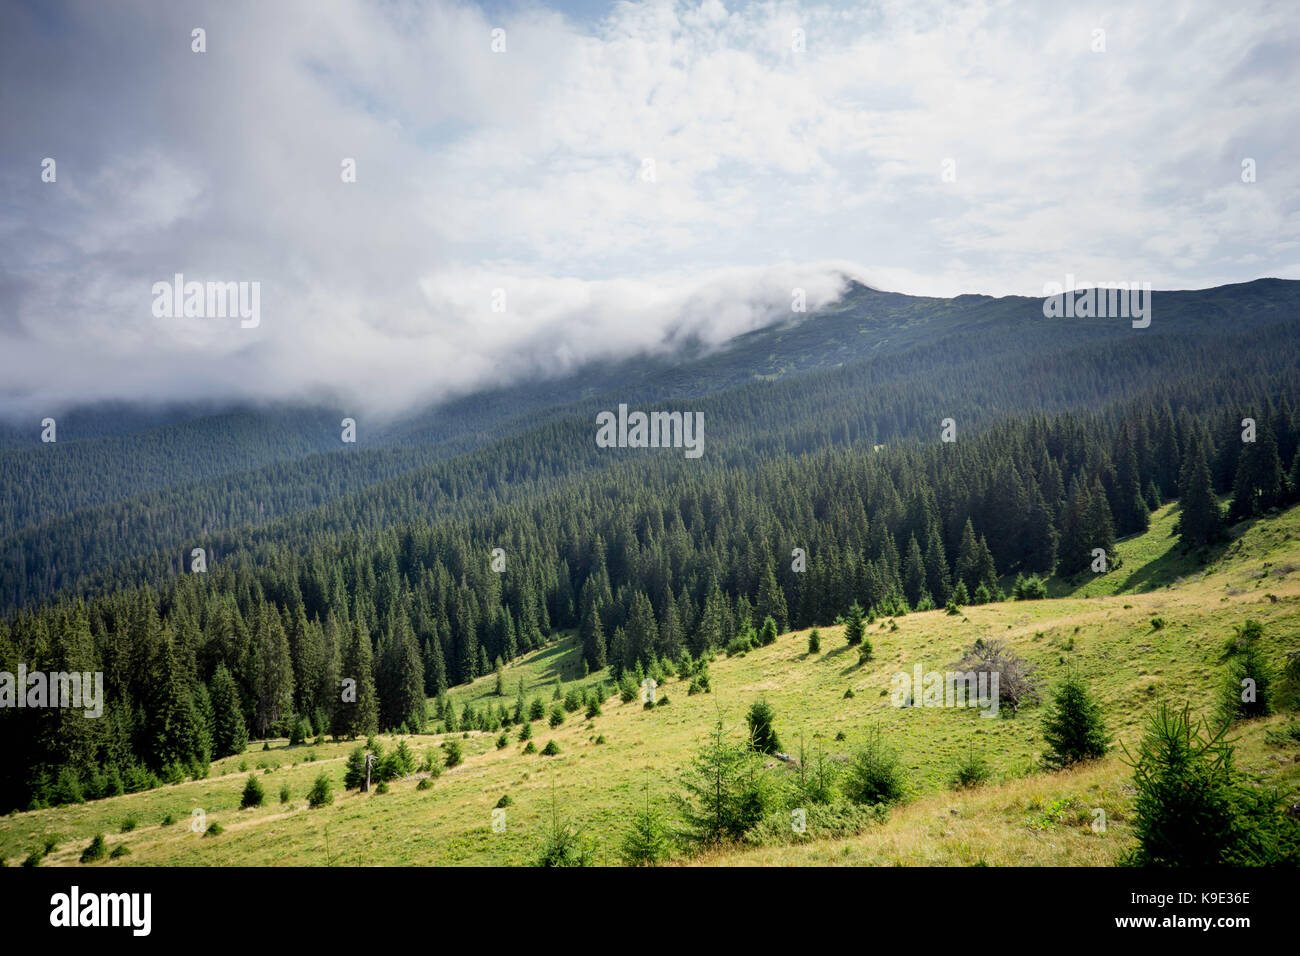 La foto ha preso per un viaggio sulle montagne dei Carpazi intorno al pop ivan. Foto Stock